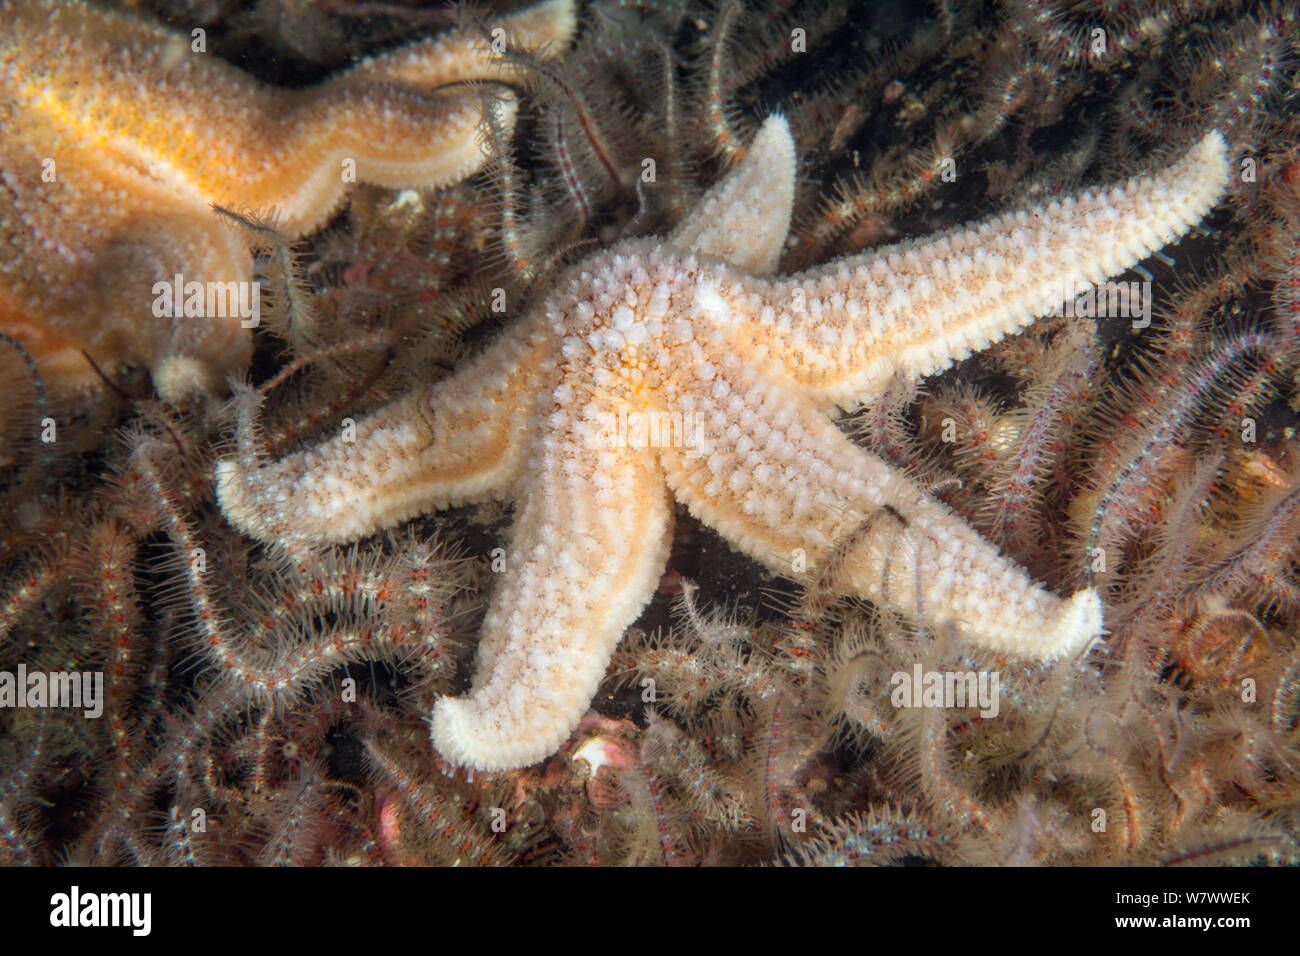 L'étoile de mer commune (Asterias rubens) St Abbs Réserve Marine volontaire, l'Écosse (mer du Nord). Banque D'Images